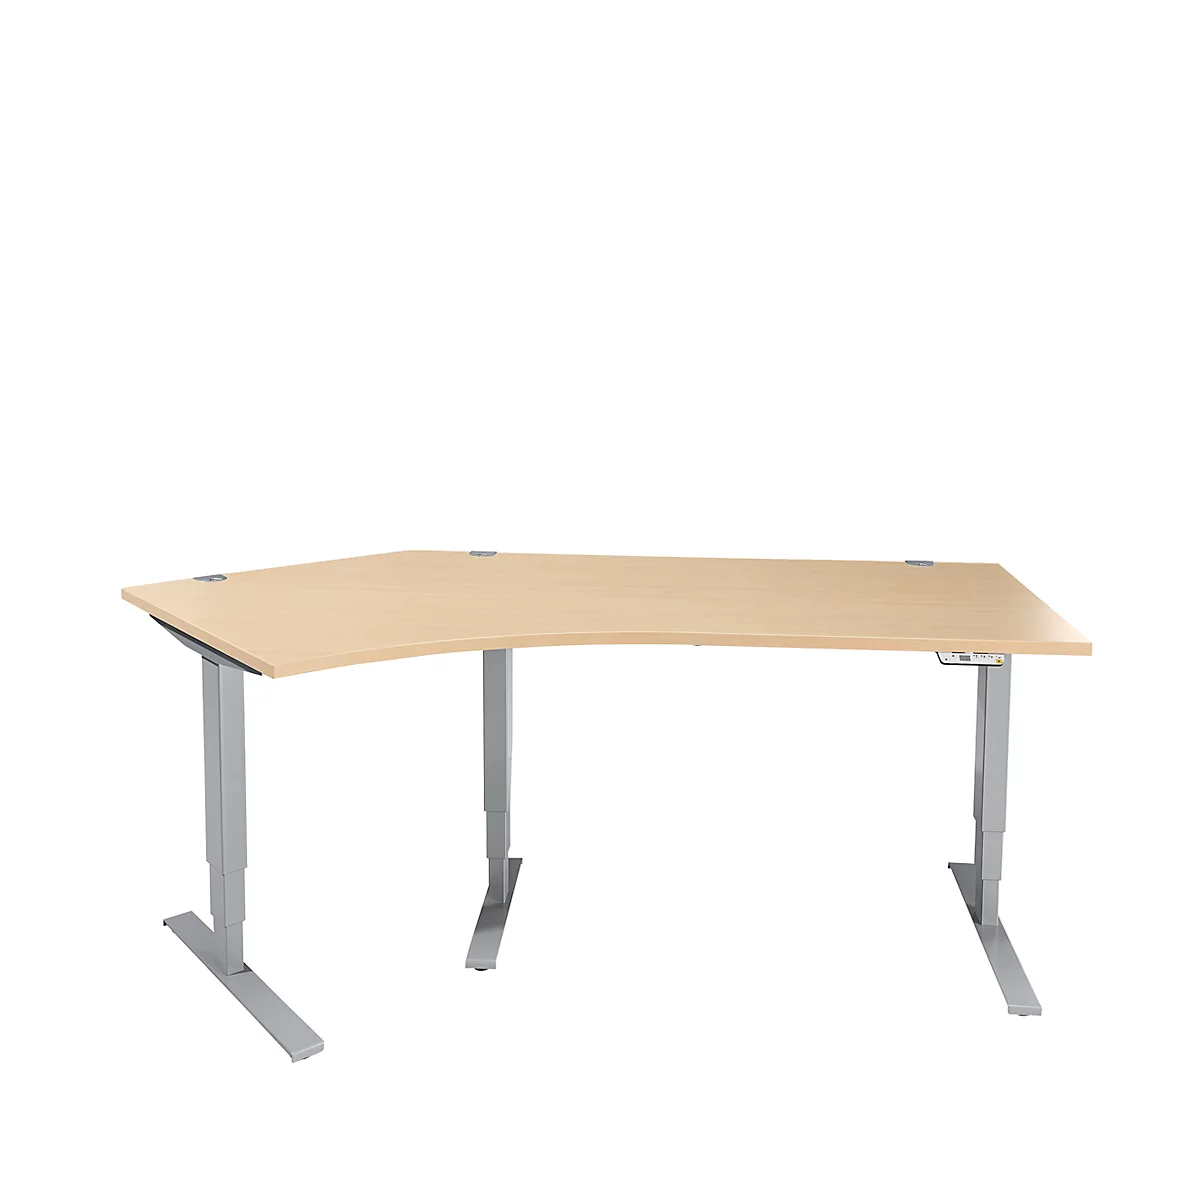 Schäfer Shop Genius AERO FLEX escritorio angular, regulable eléctricamente en altura, ángulo de 135° a la izquierda, anchura 2165 mm, arce/aluminio blanco + panel de memoria